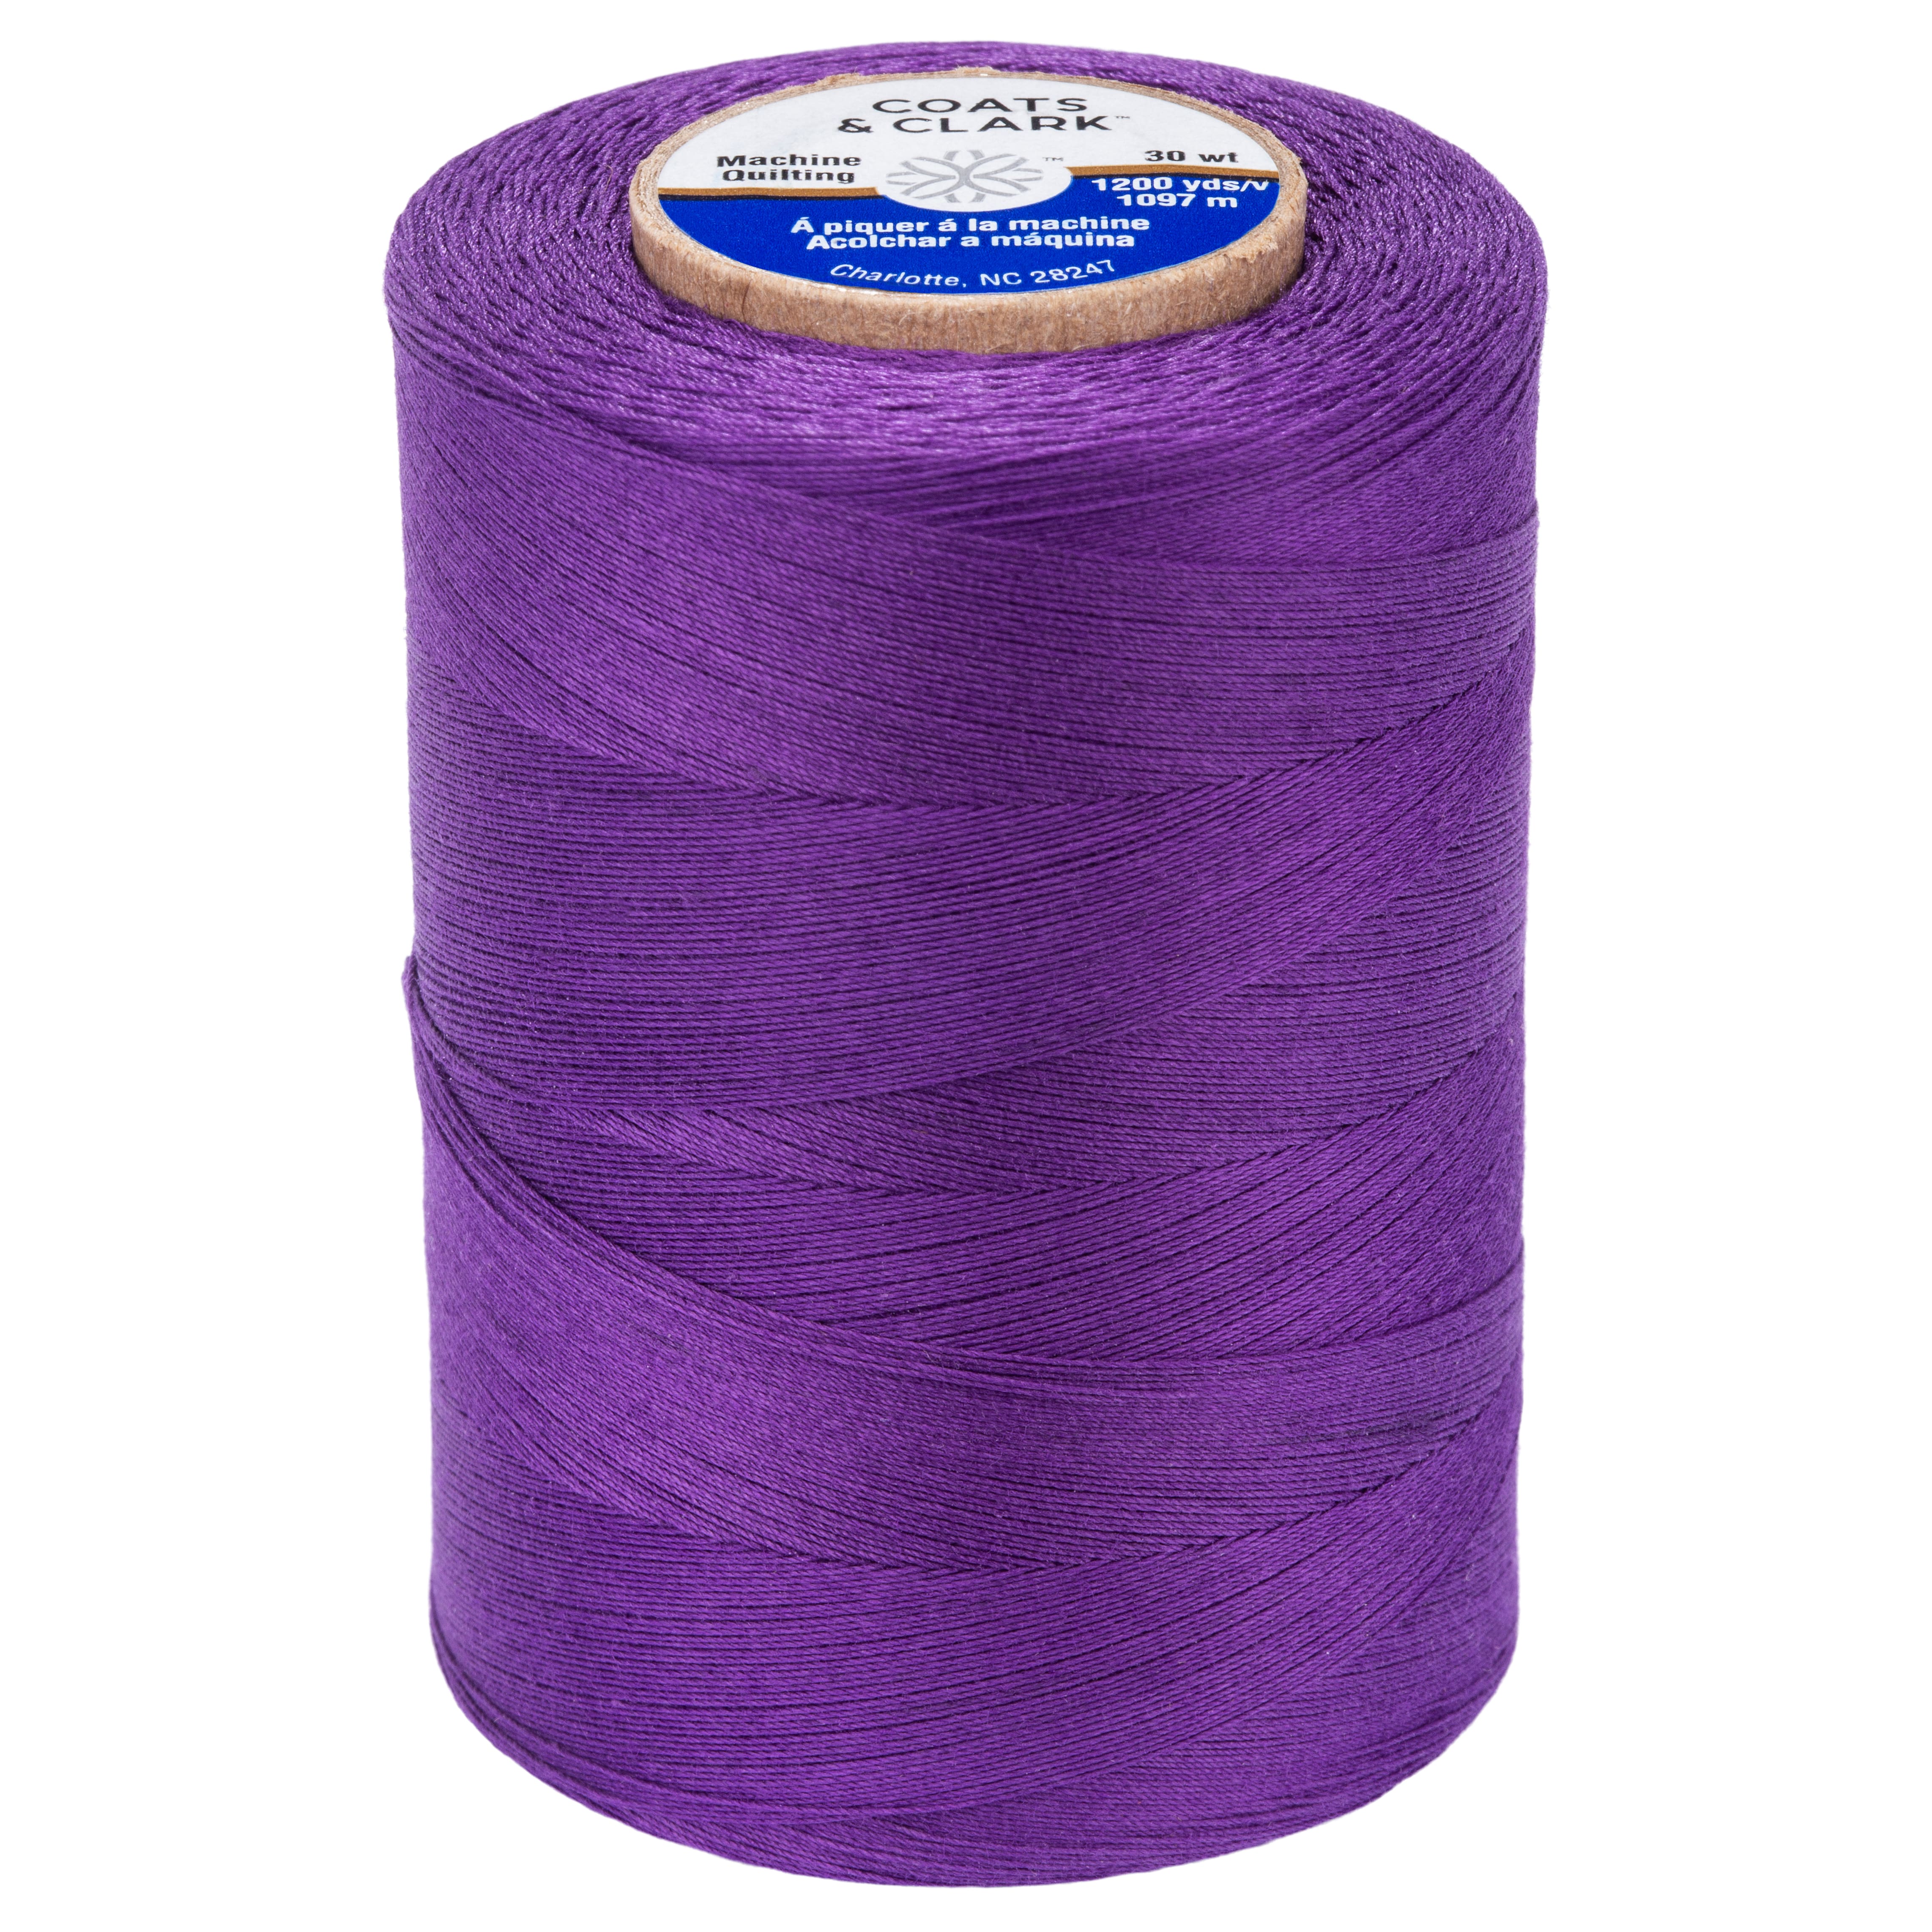 Coats & Clark Cotton Machine Quilting Thread (1200 Yards)